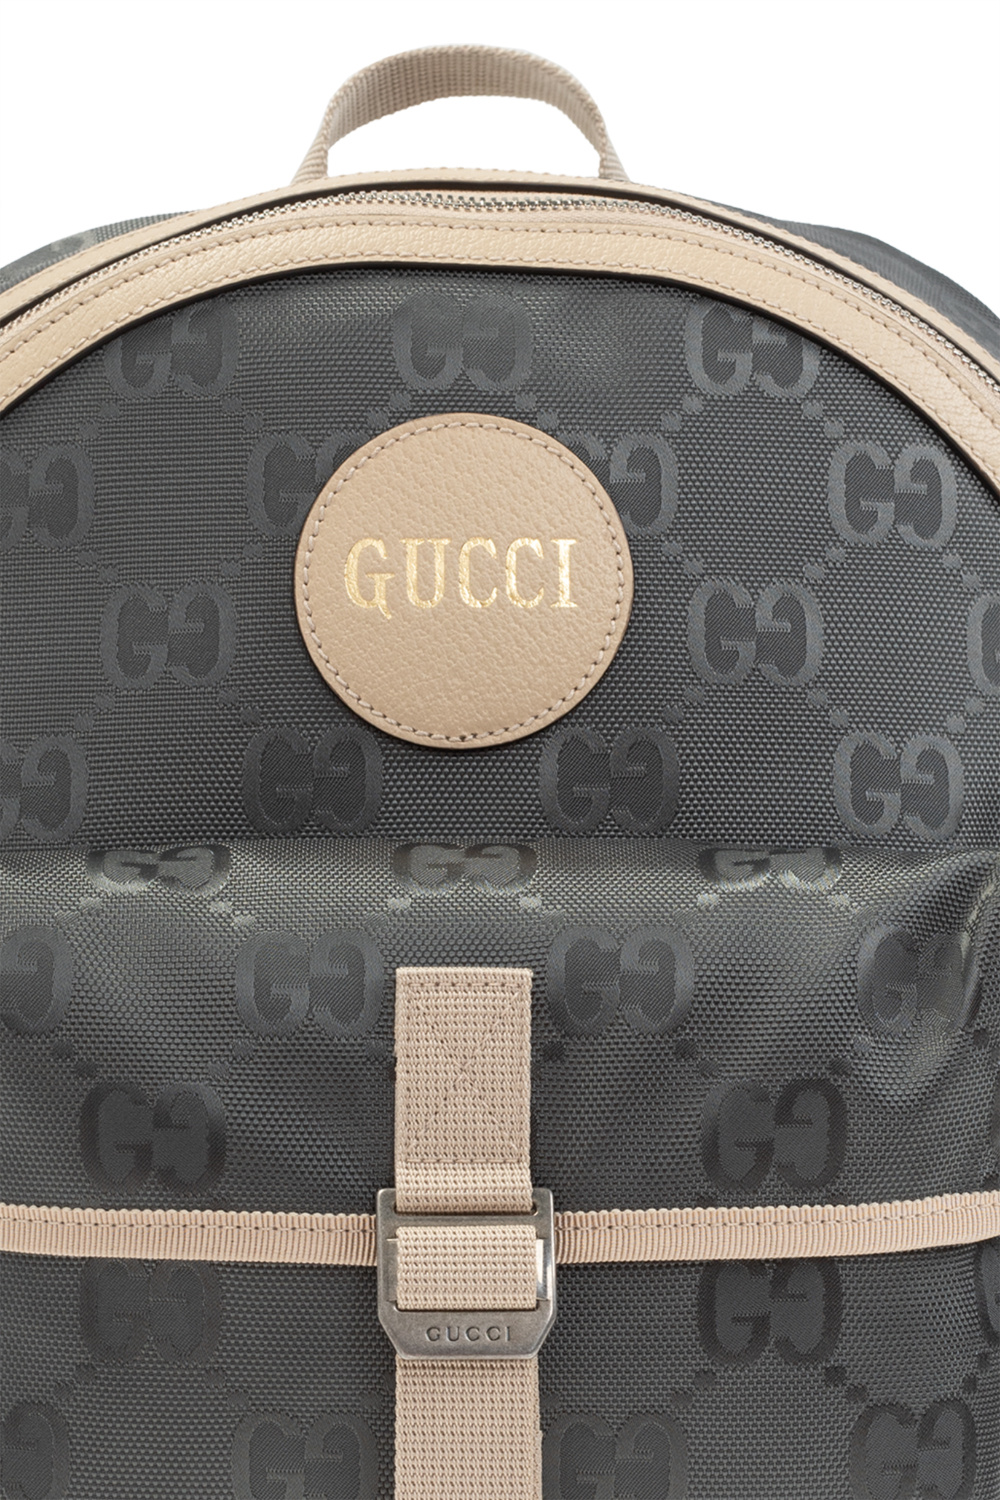 Gucci Horsebit 1955 mini top handle bag 645453 92TCG 8563